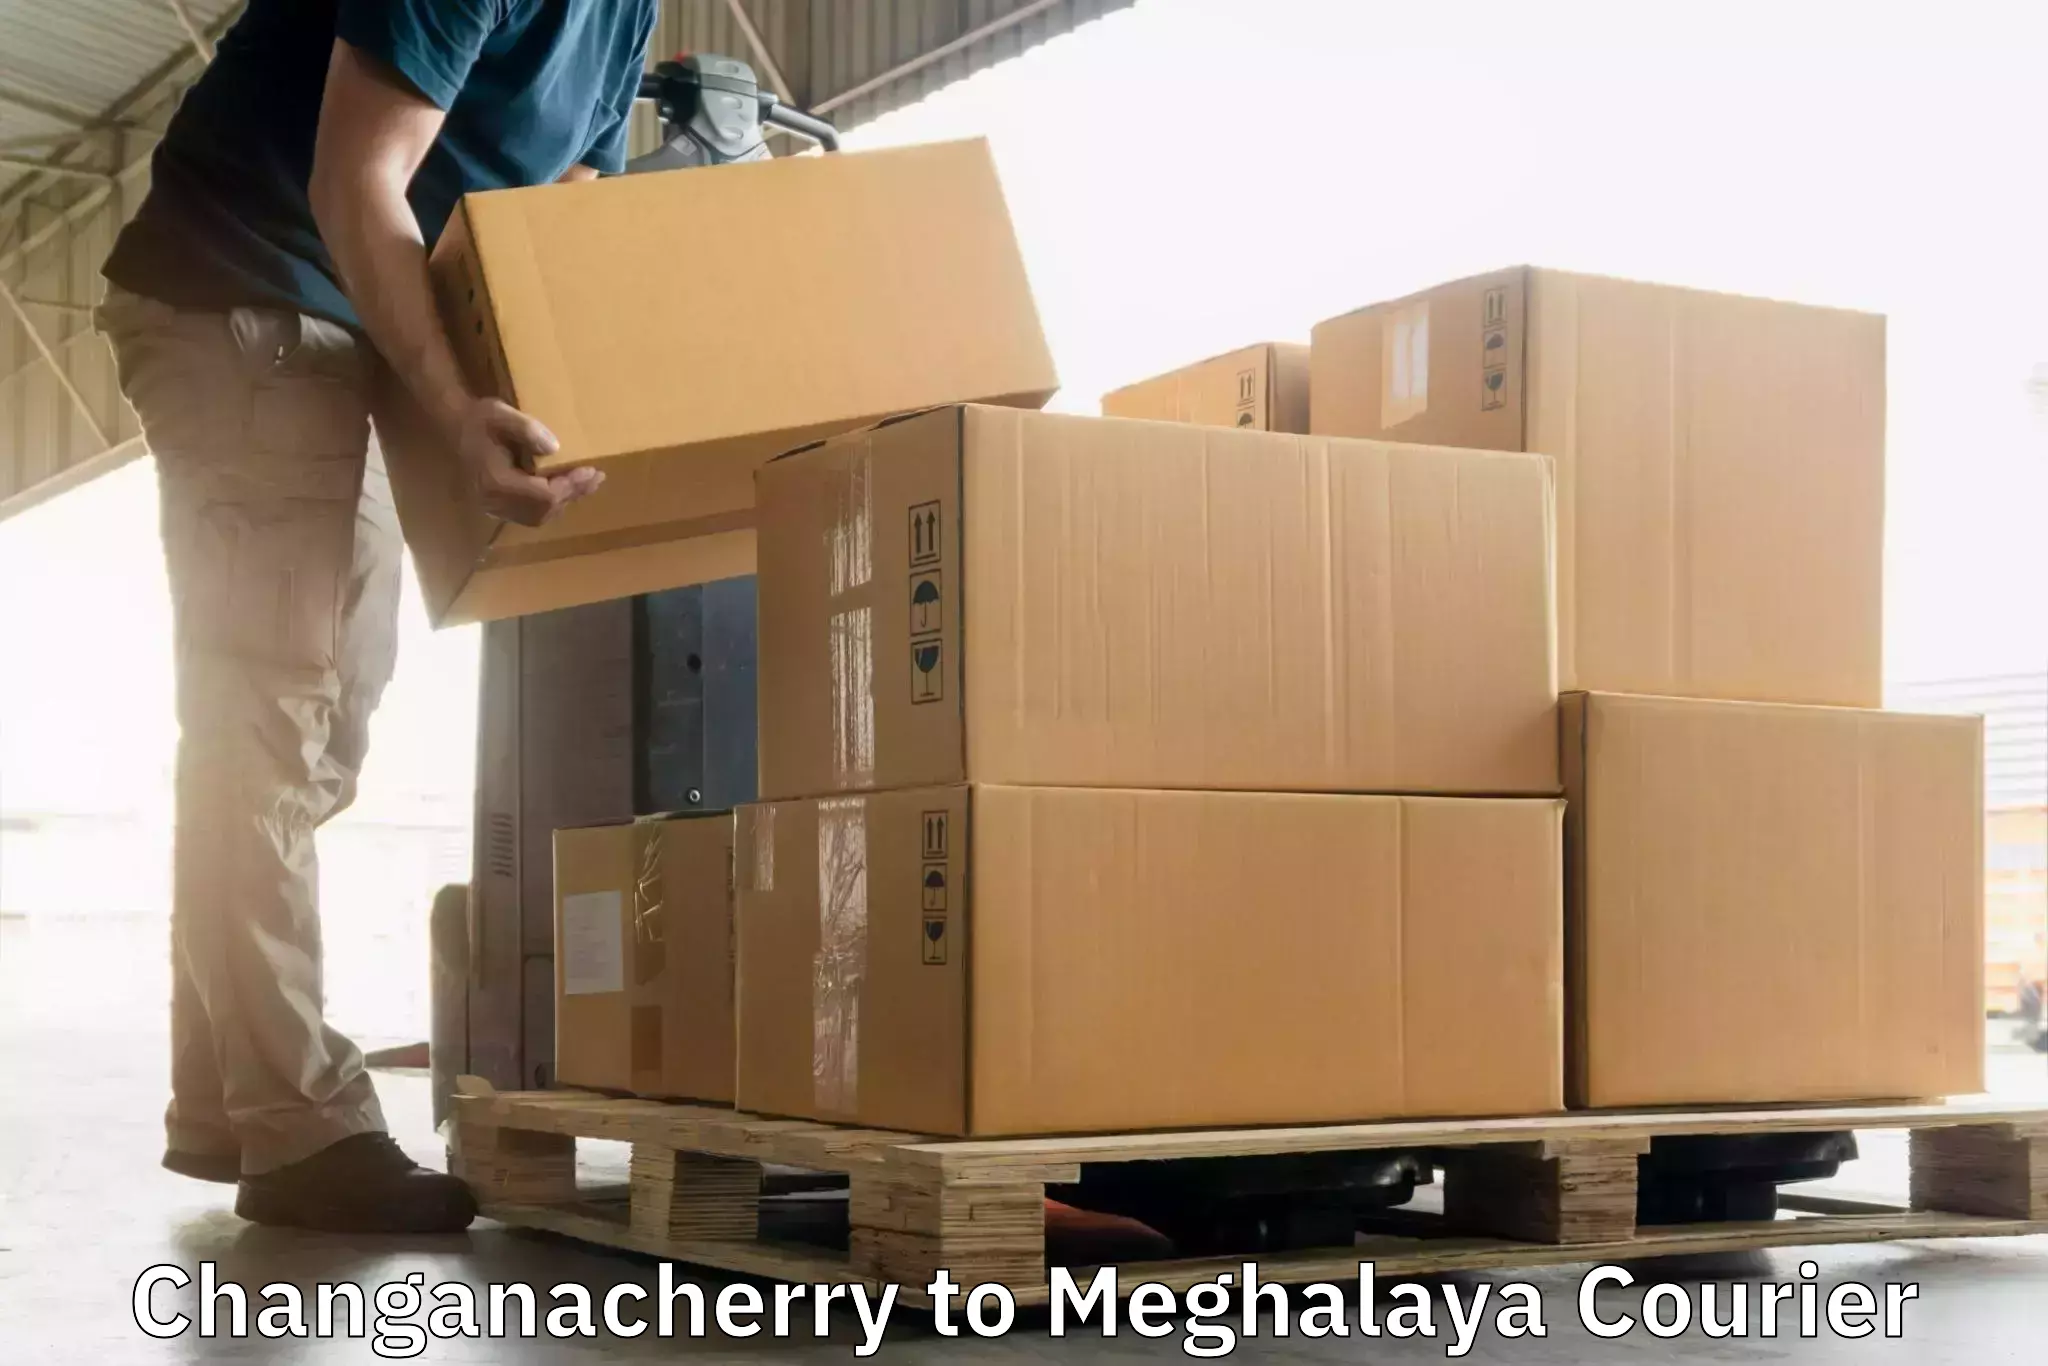 Ground shipping Changanacherry to Meghalaya